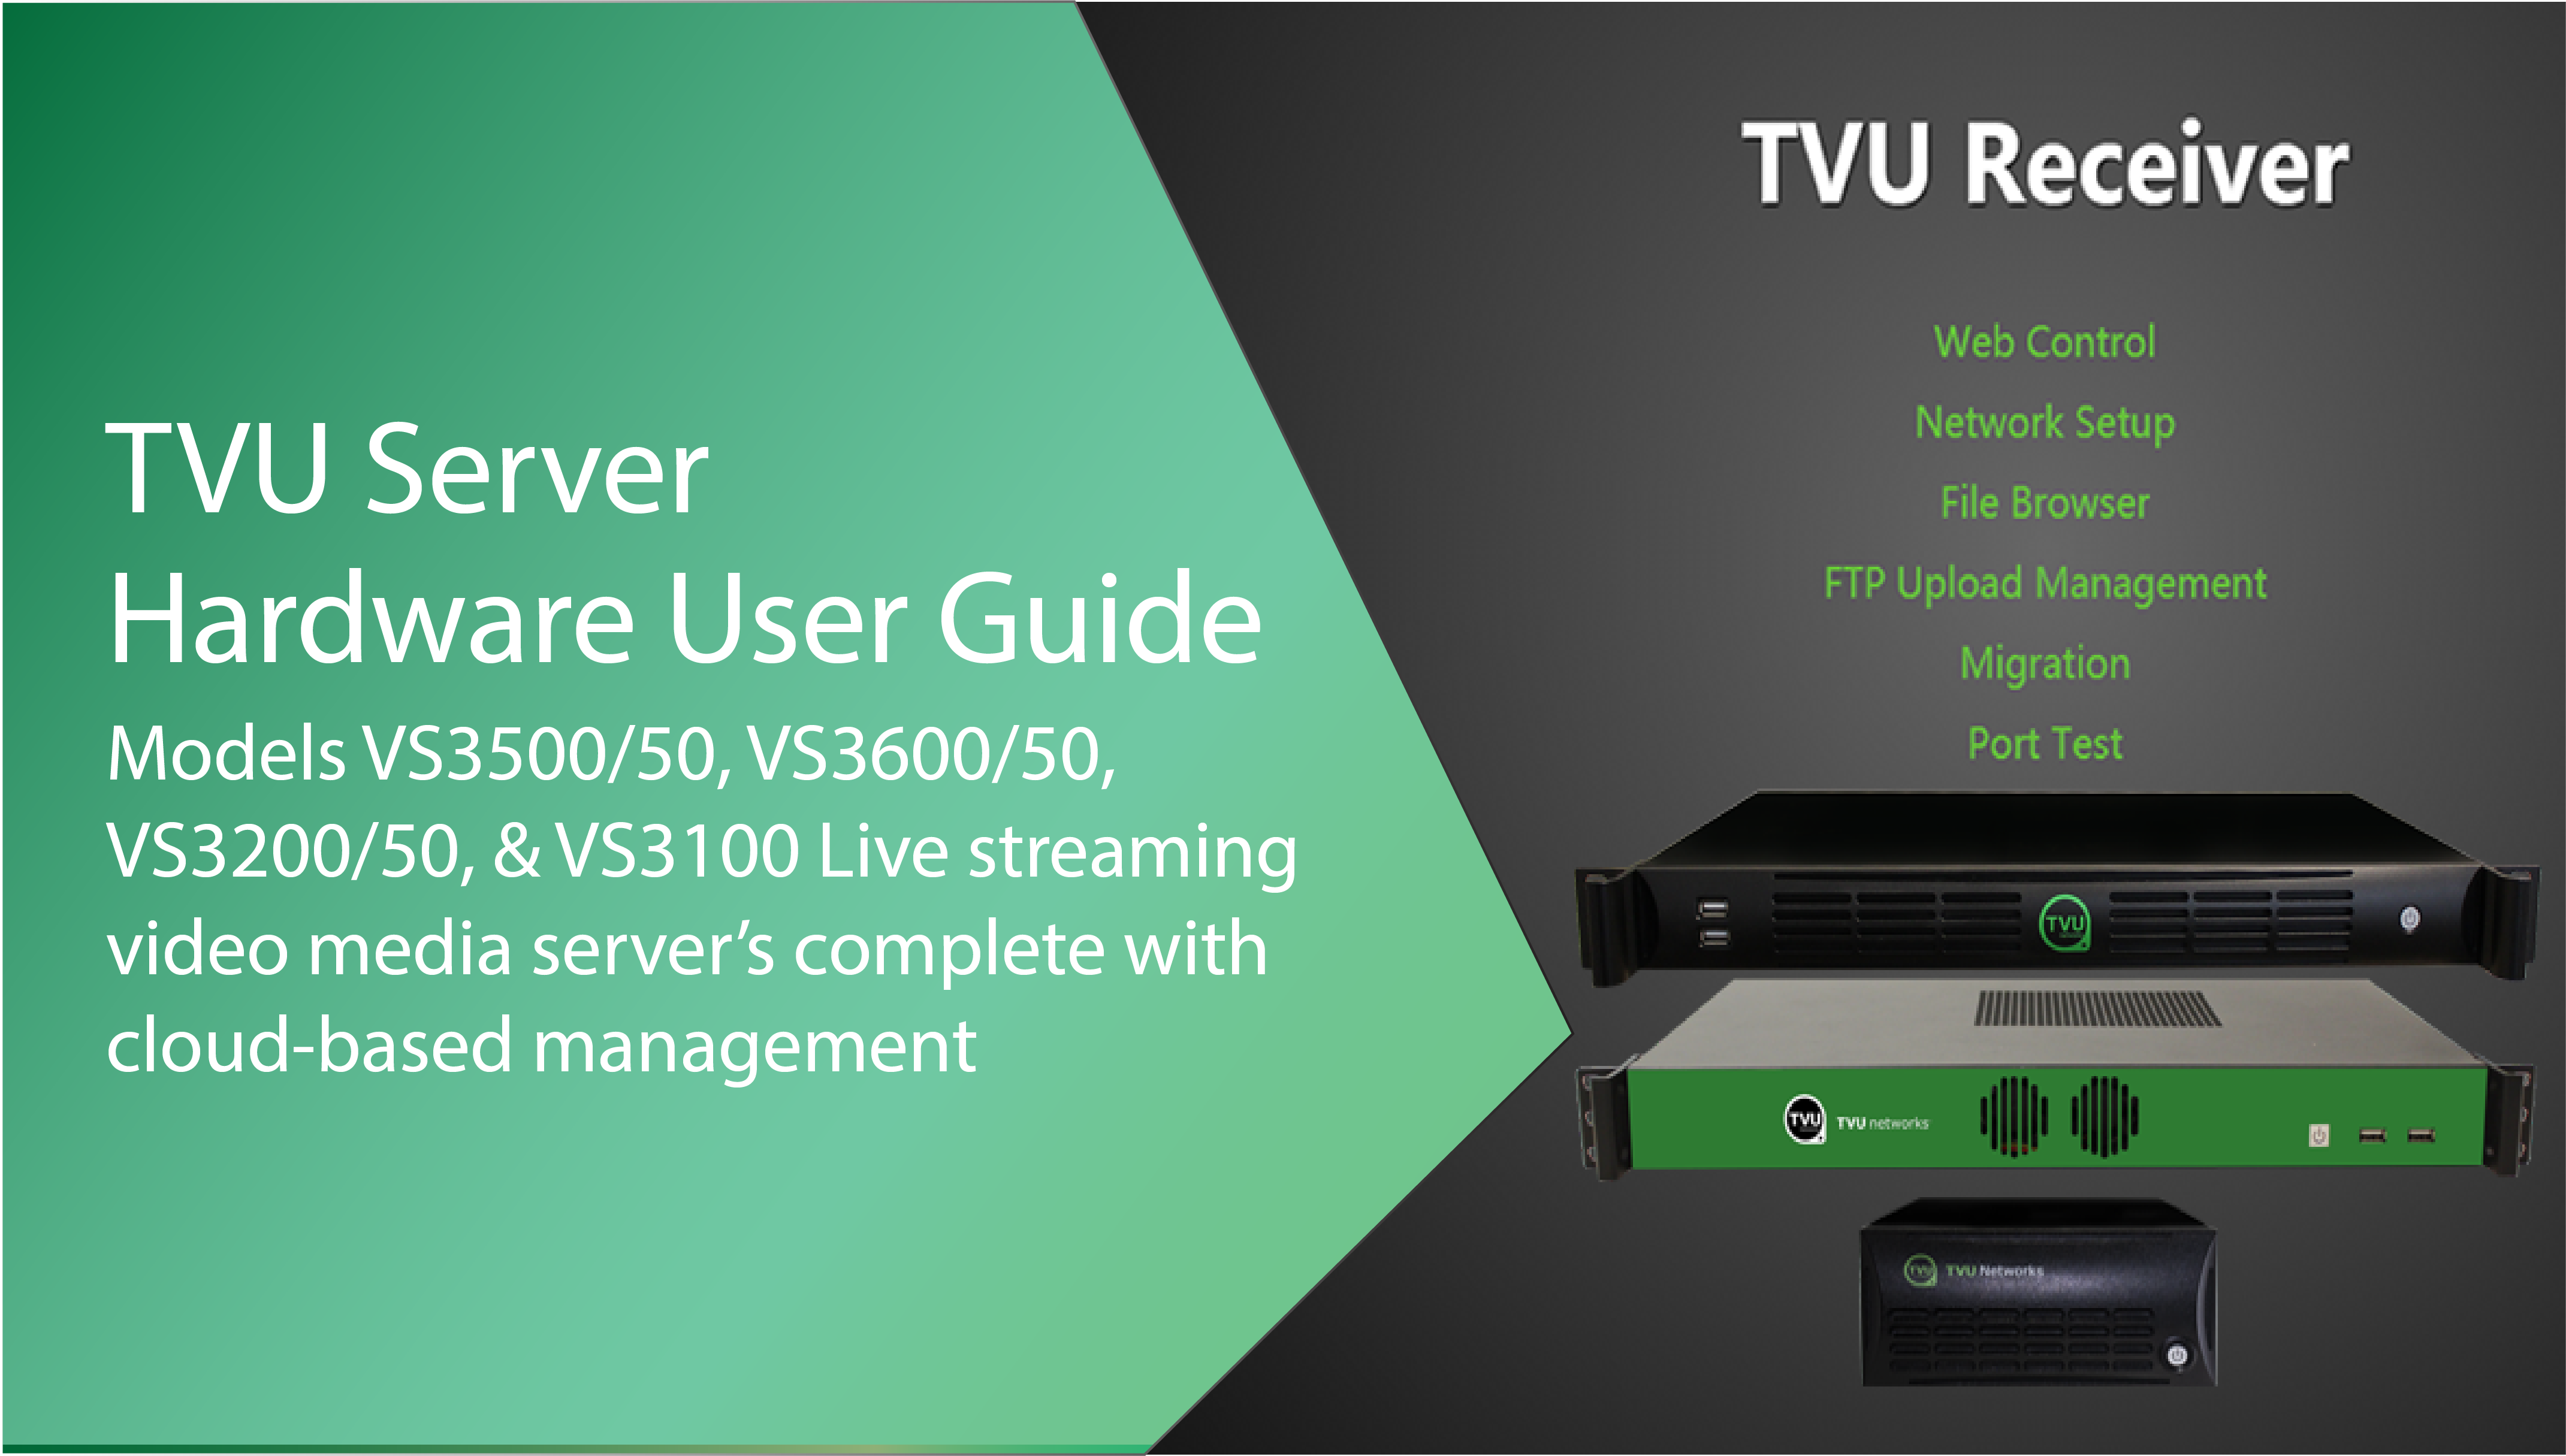 TVU Server Hardware User Guide feature image